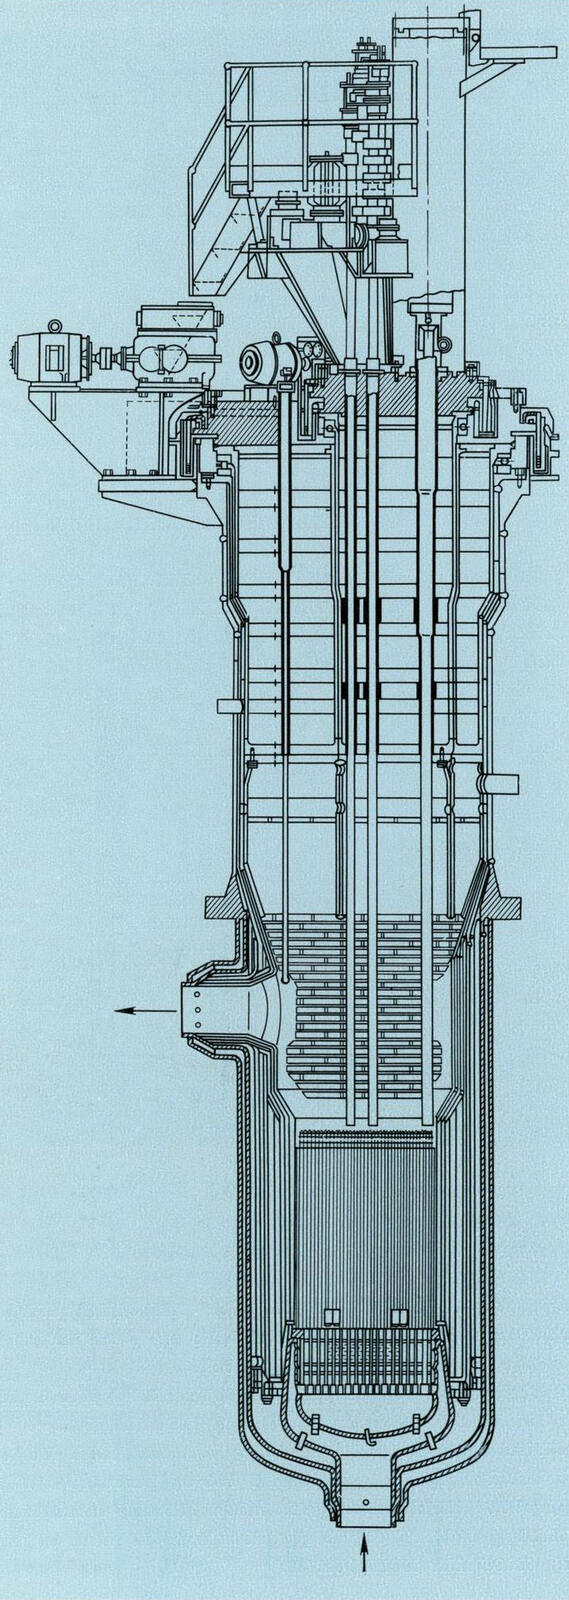 Схема реактора БОР-60